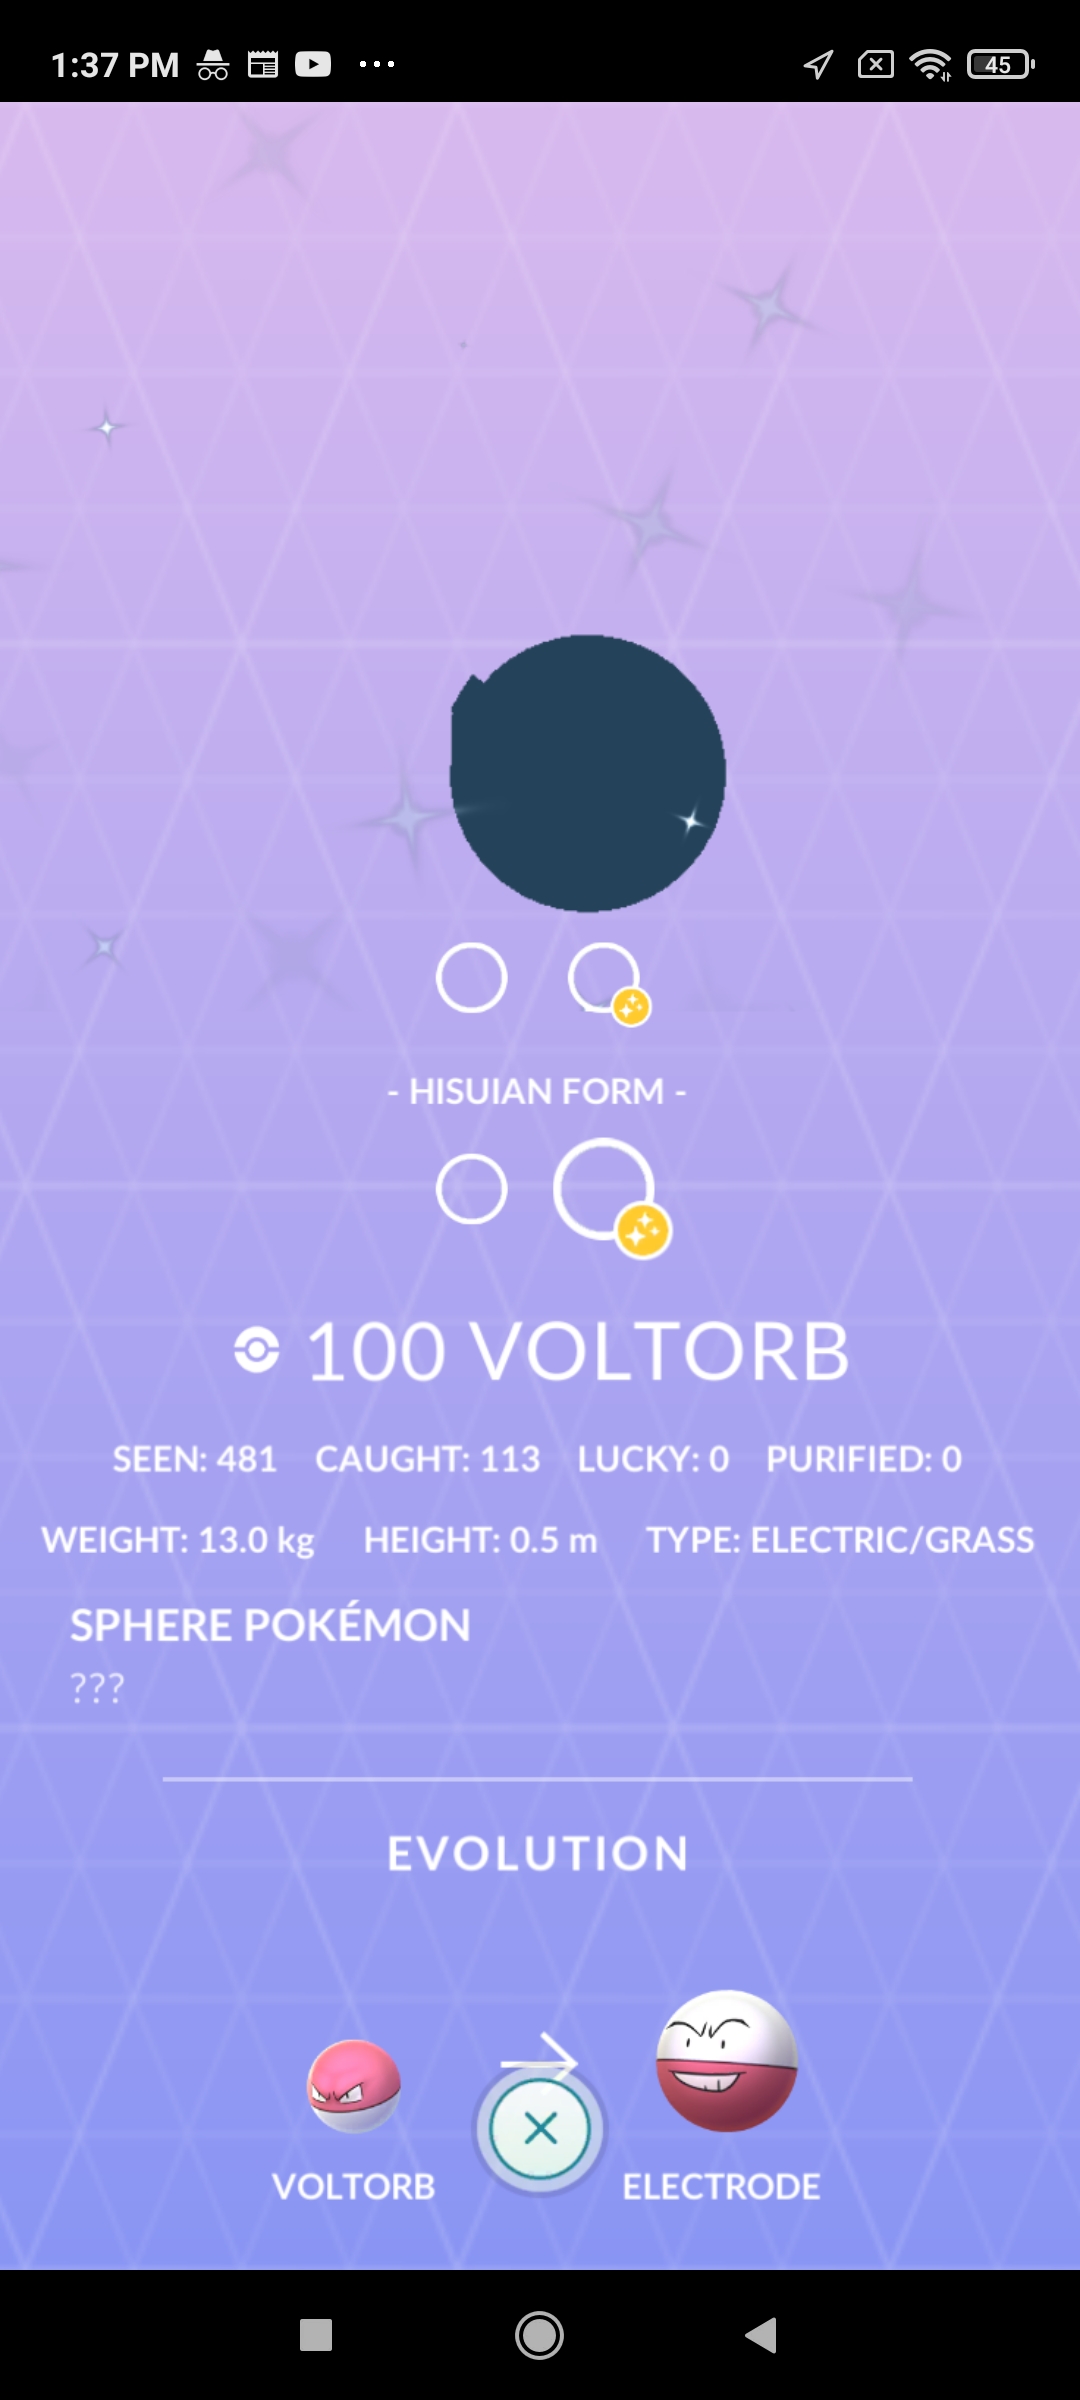 Pokemon GO - Shiny Voltorb (30 Day Friendship Available)